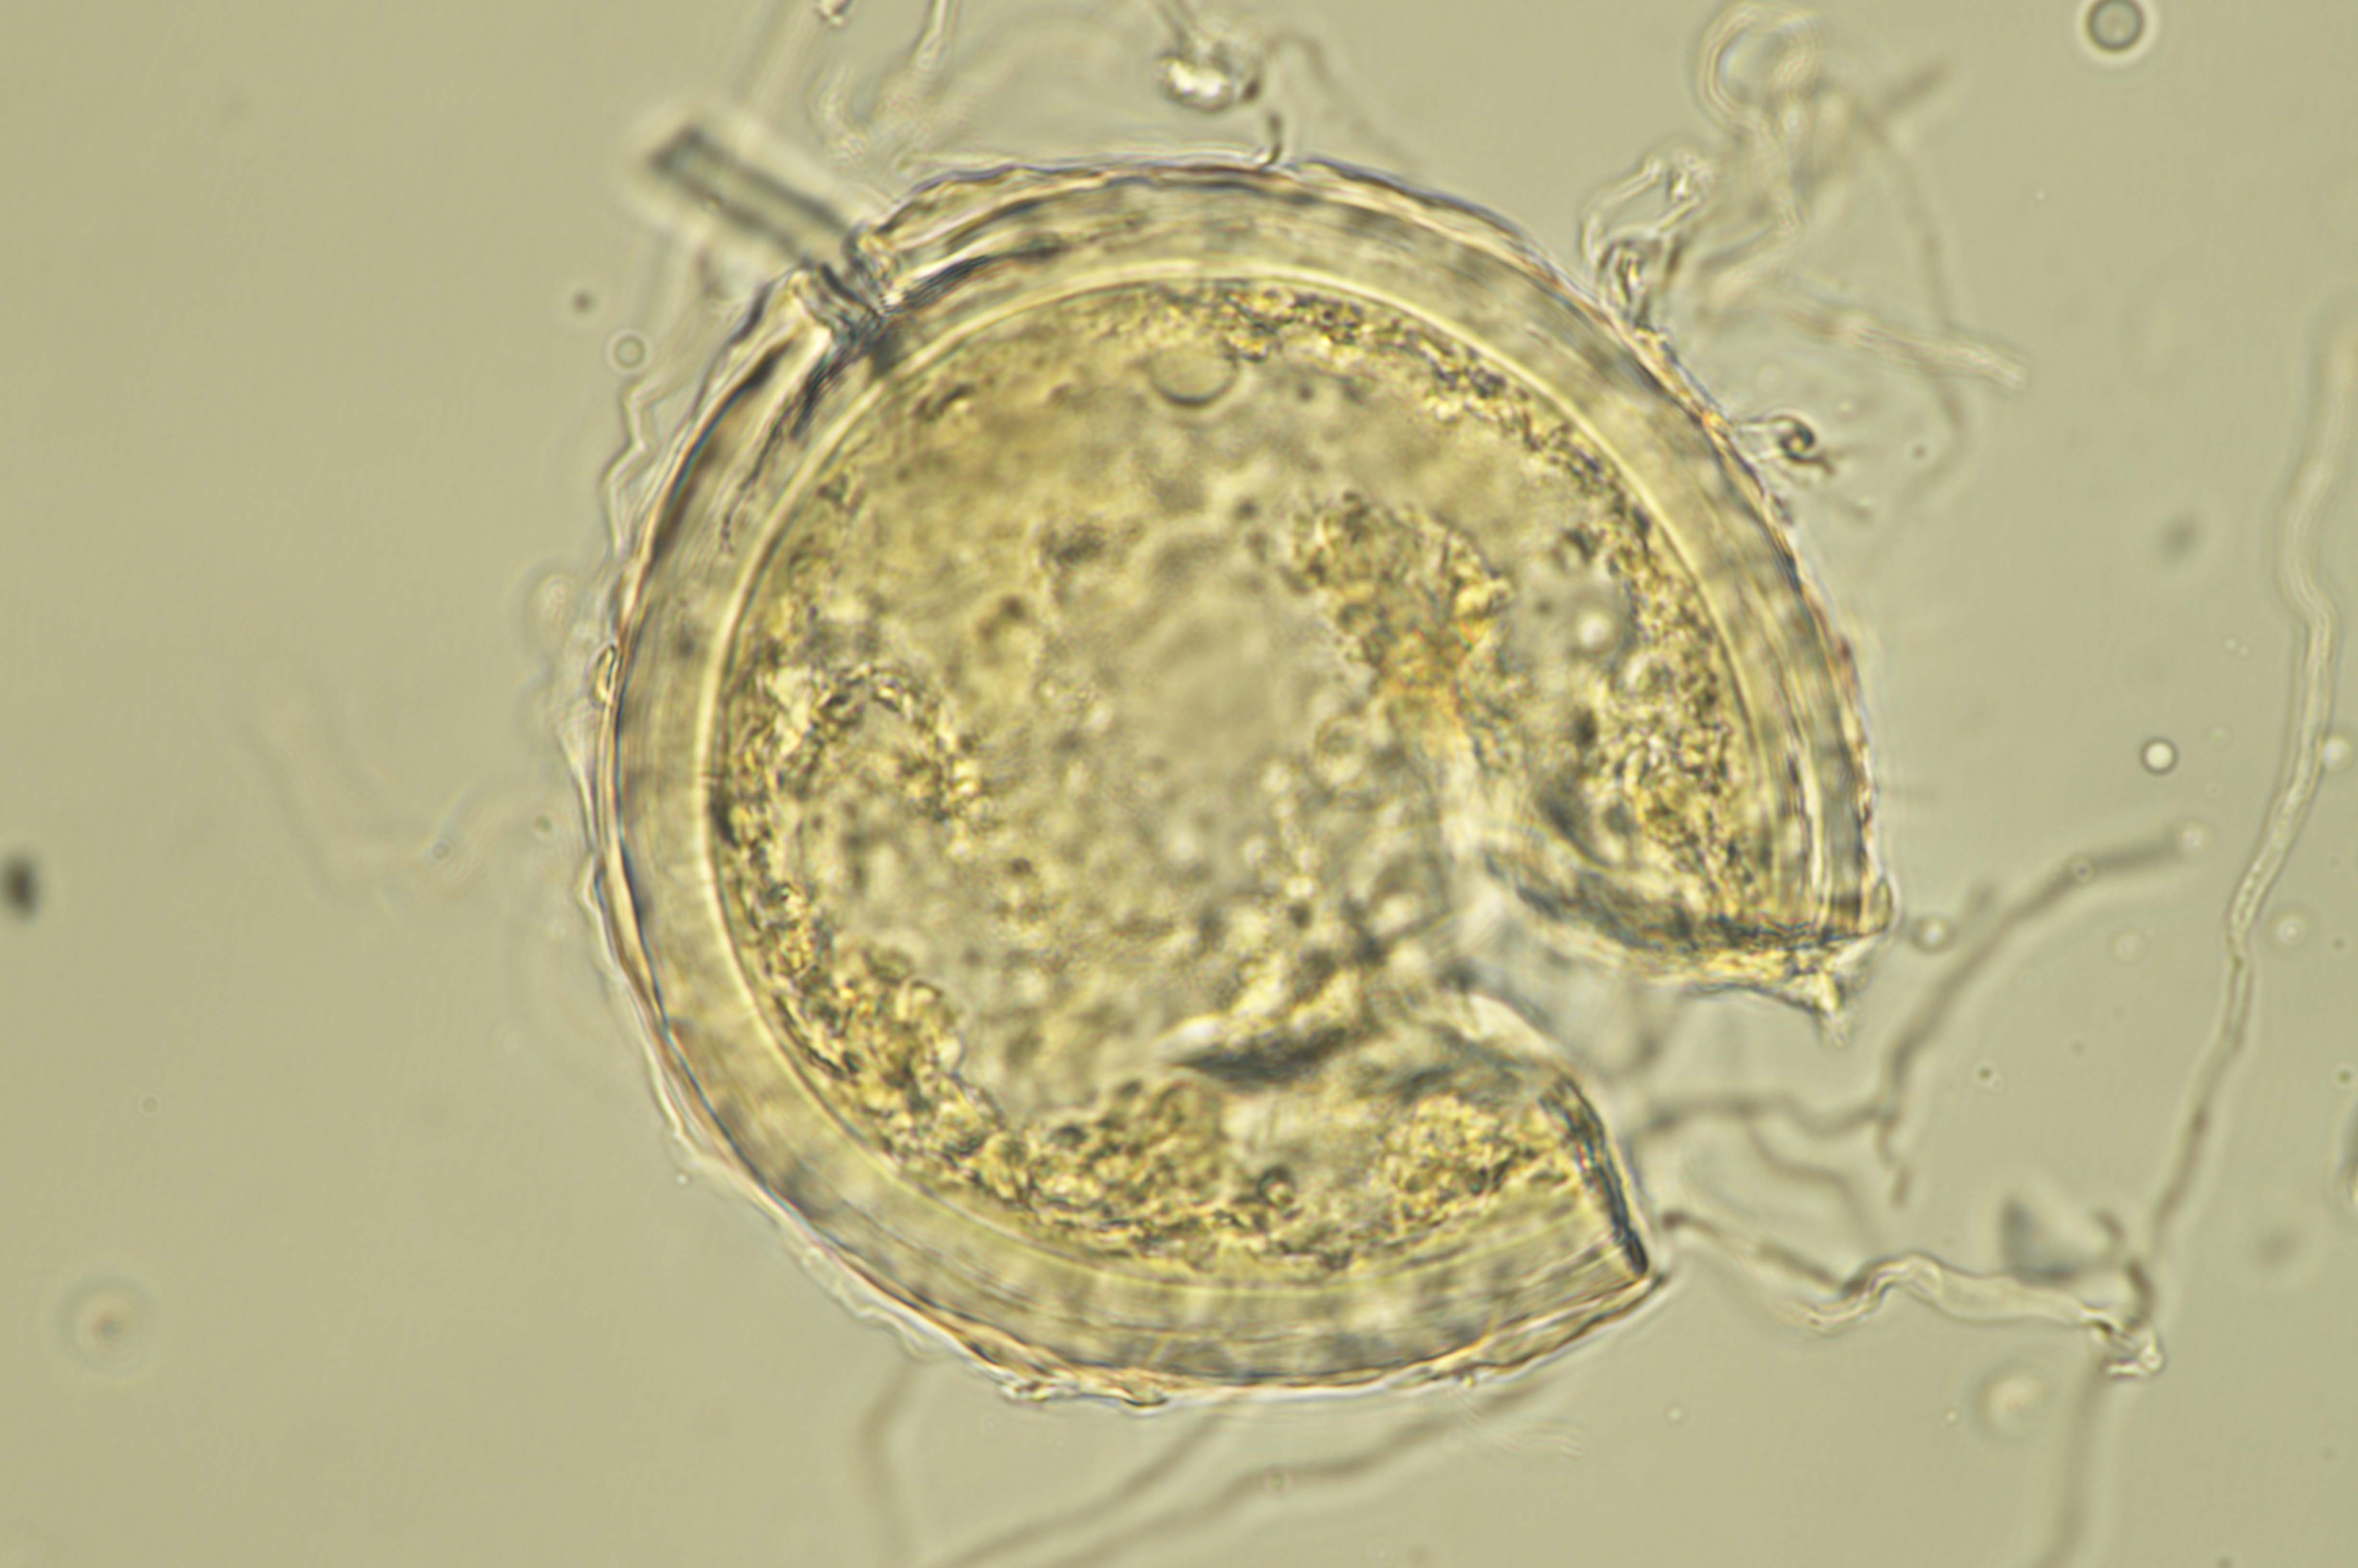 Microscopic image 3 of DAOMC 300090